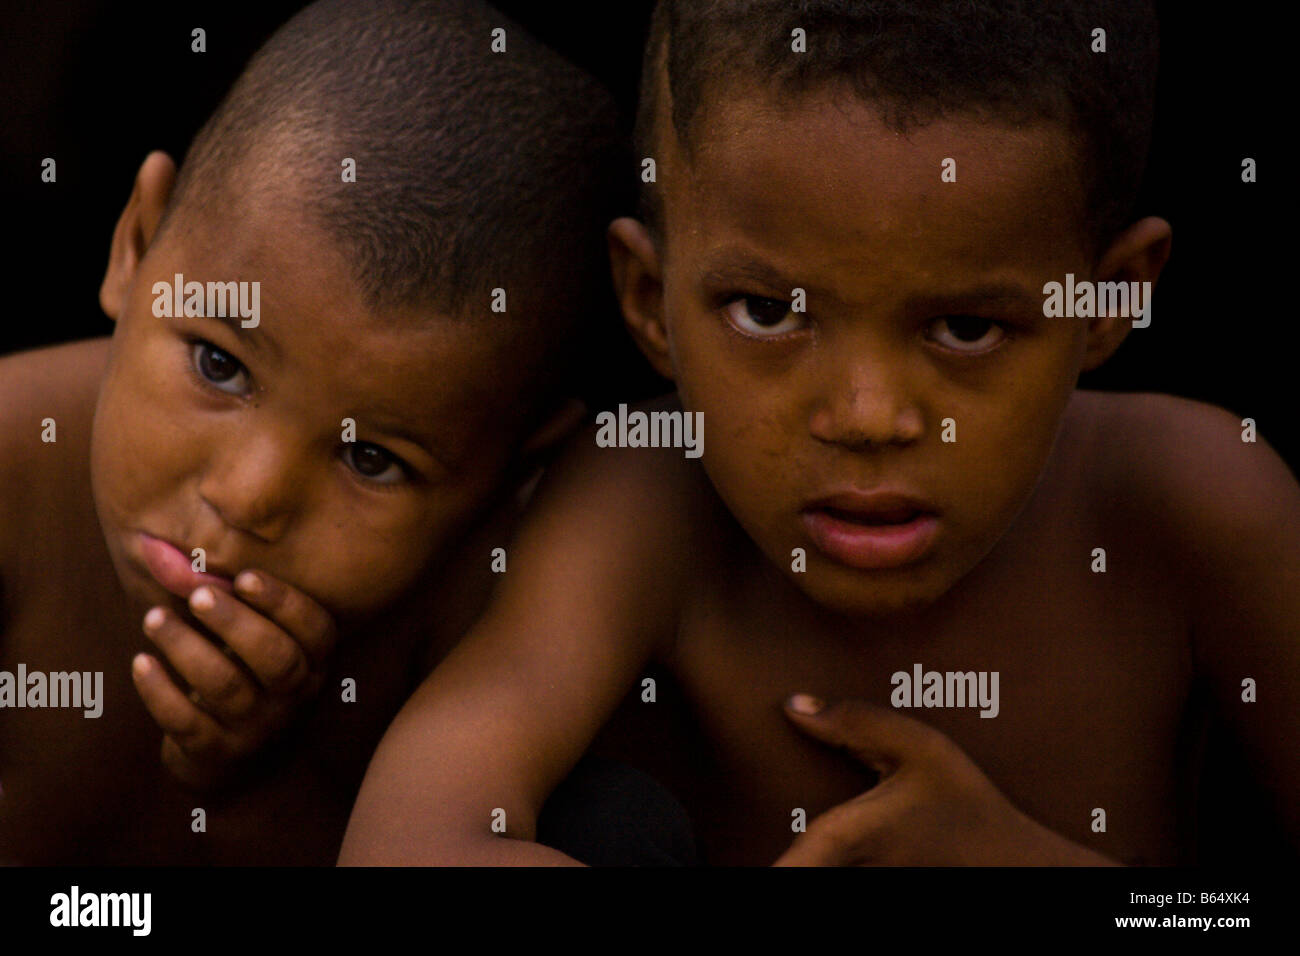 Foto von zwei jungen Touareg in Ouagadougou, Burkina Faso. Stockfoto